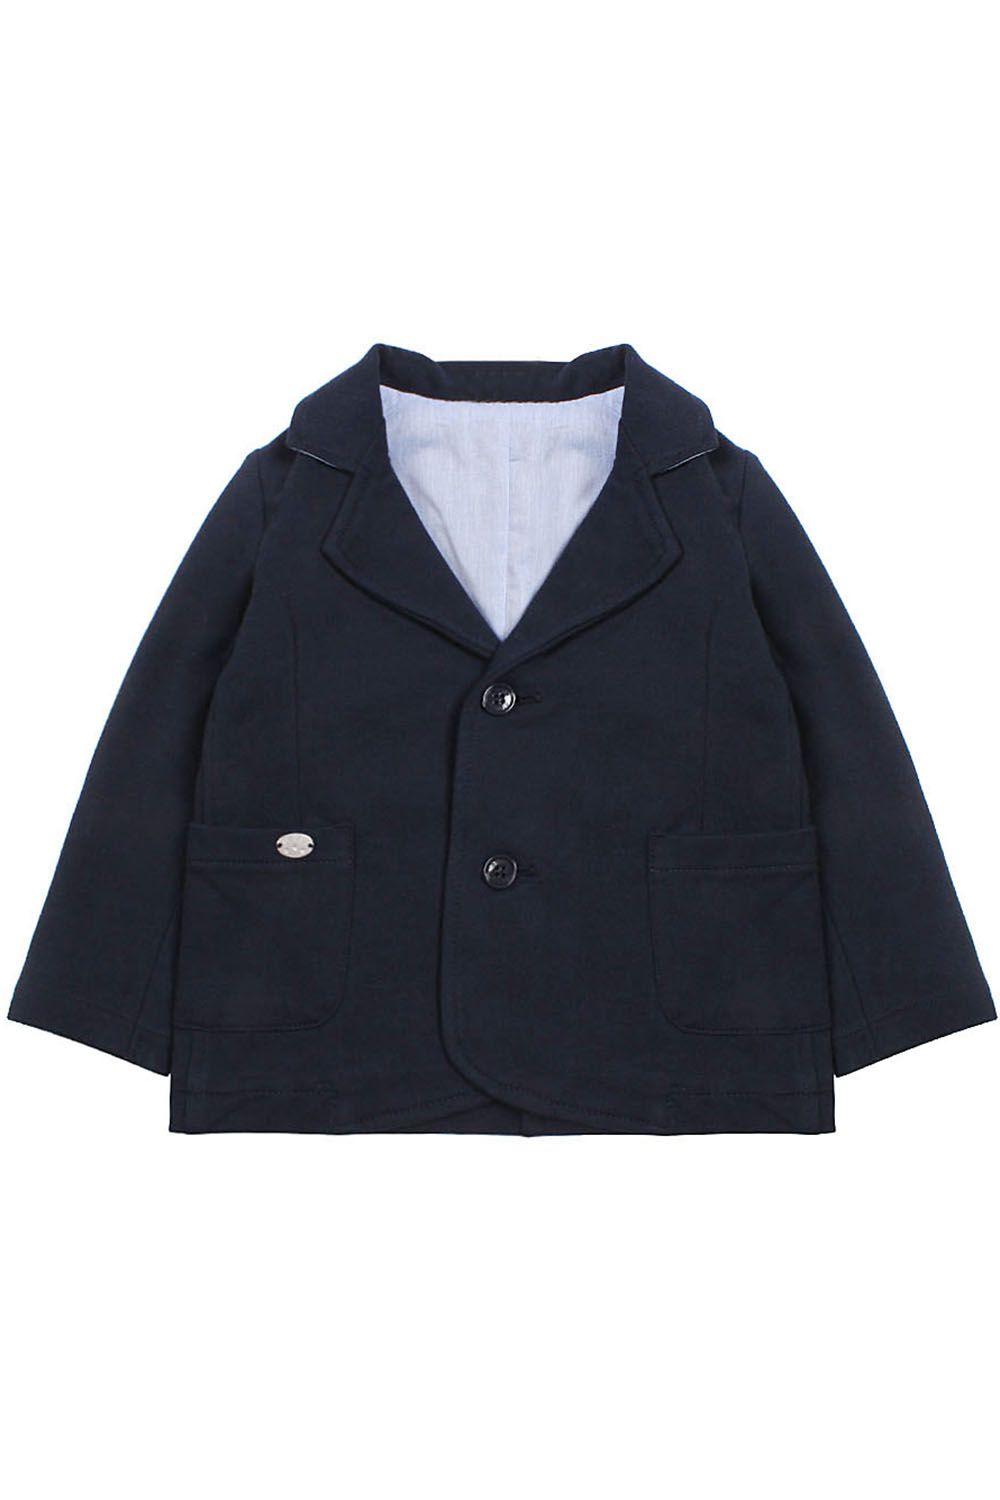 Пиджак для мальчика 999.87003.00.75D синий Birba, Китай (КНР)